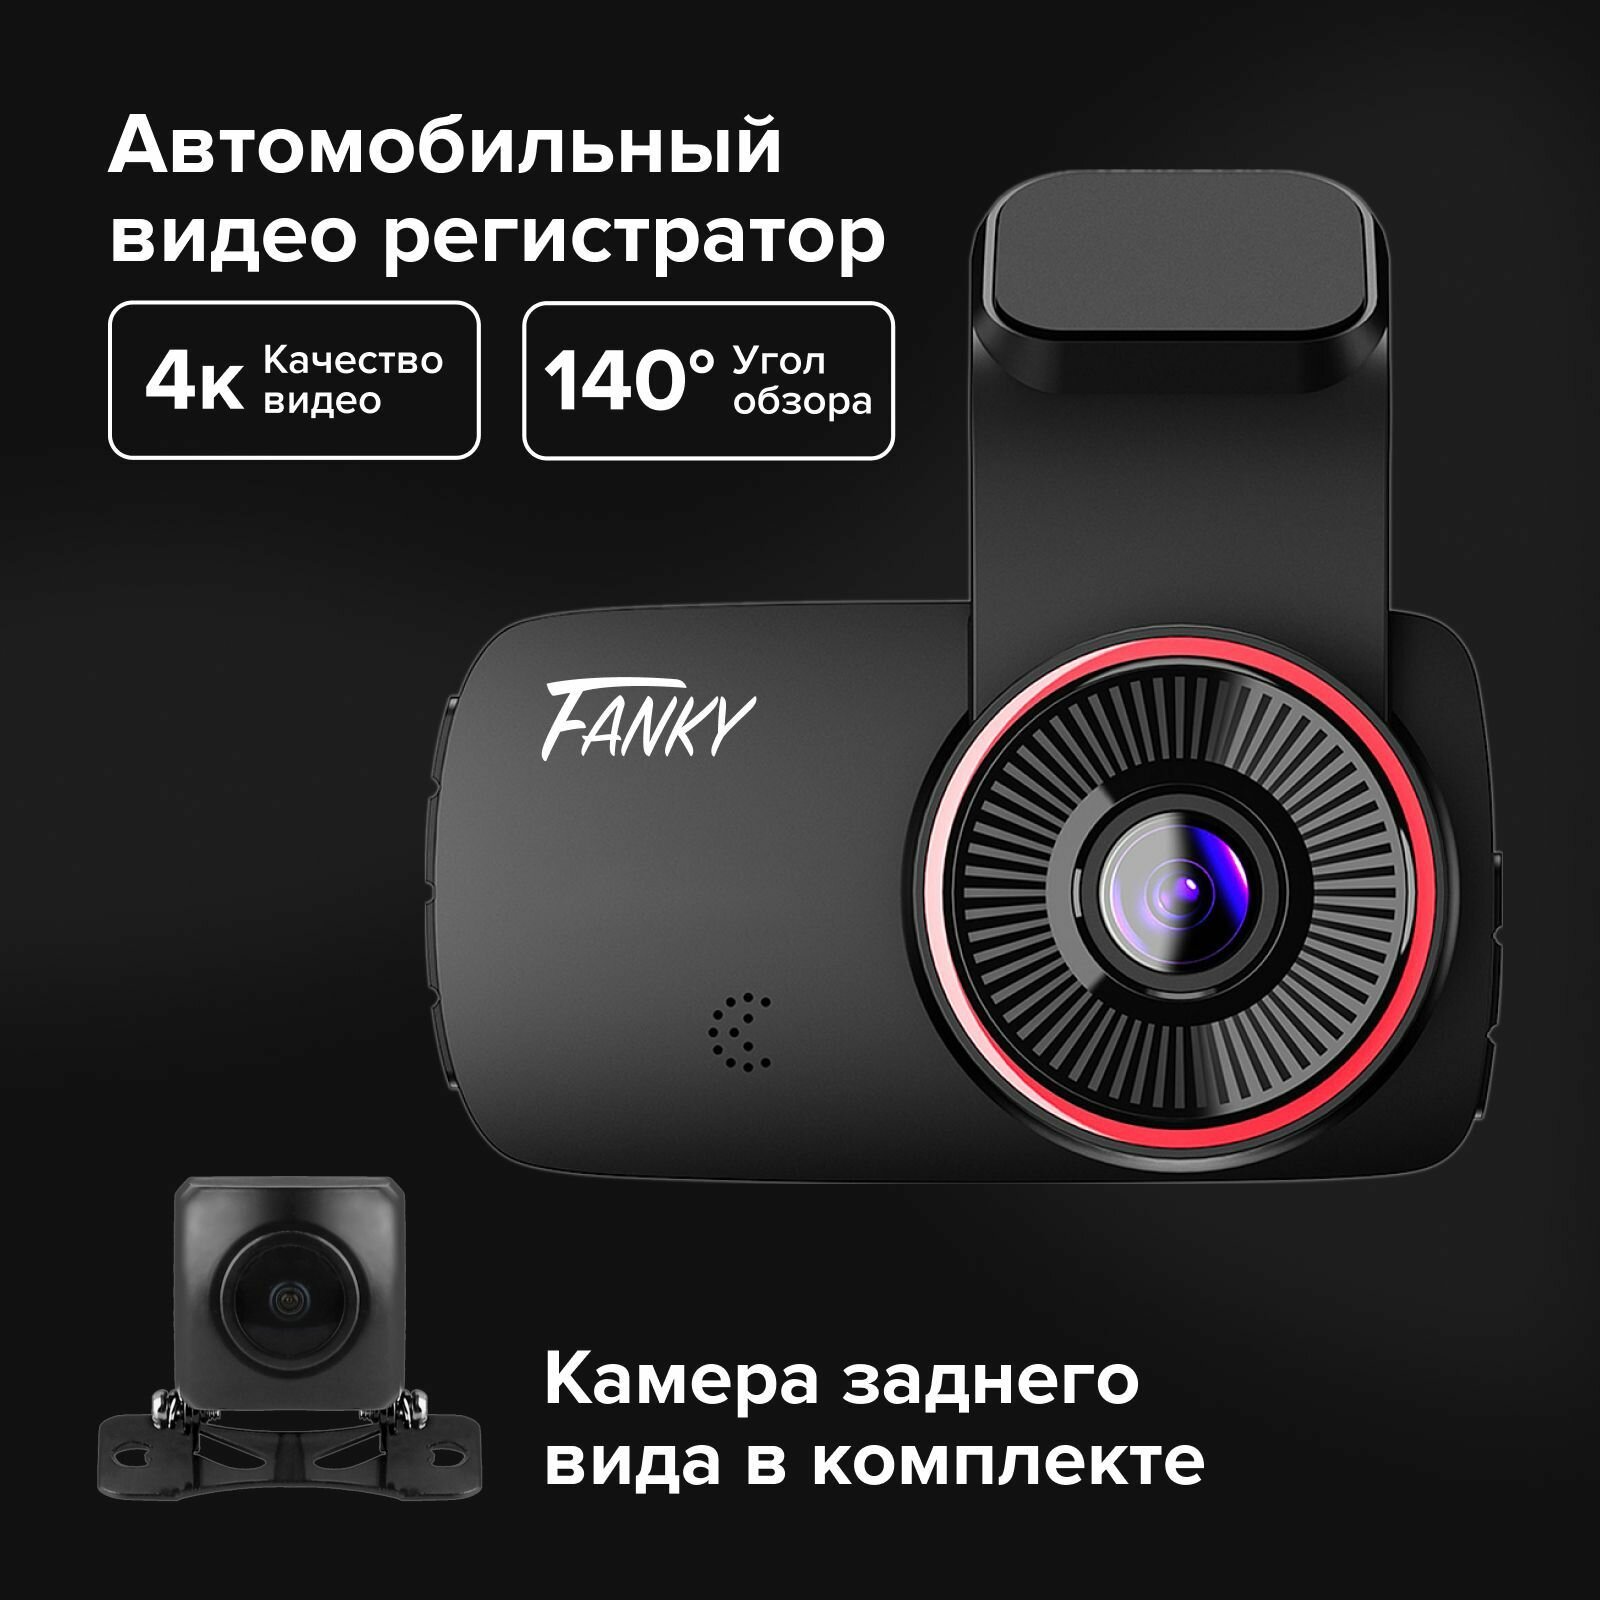 Fanky видеорегистратор автомобильный 4К ULTRA HD с камерой заднего вида 1080р